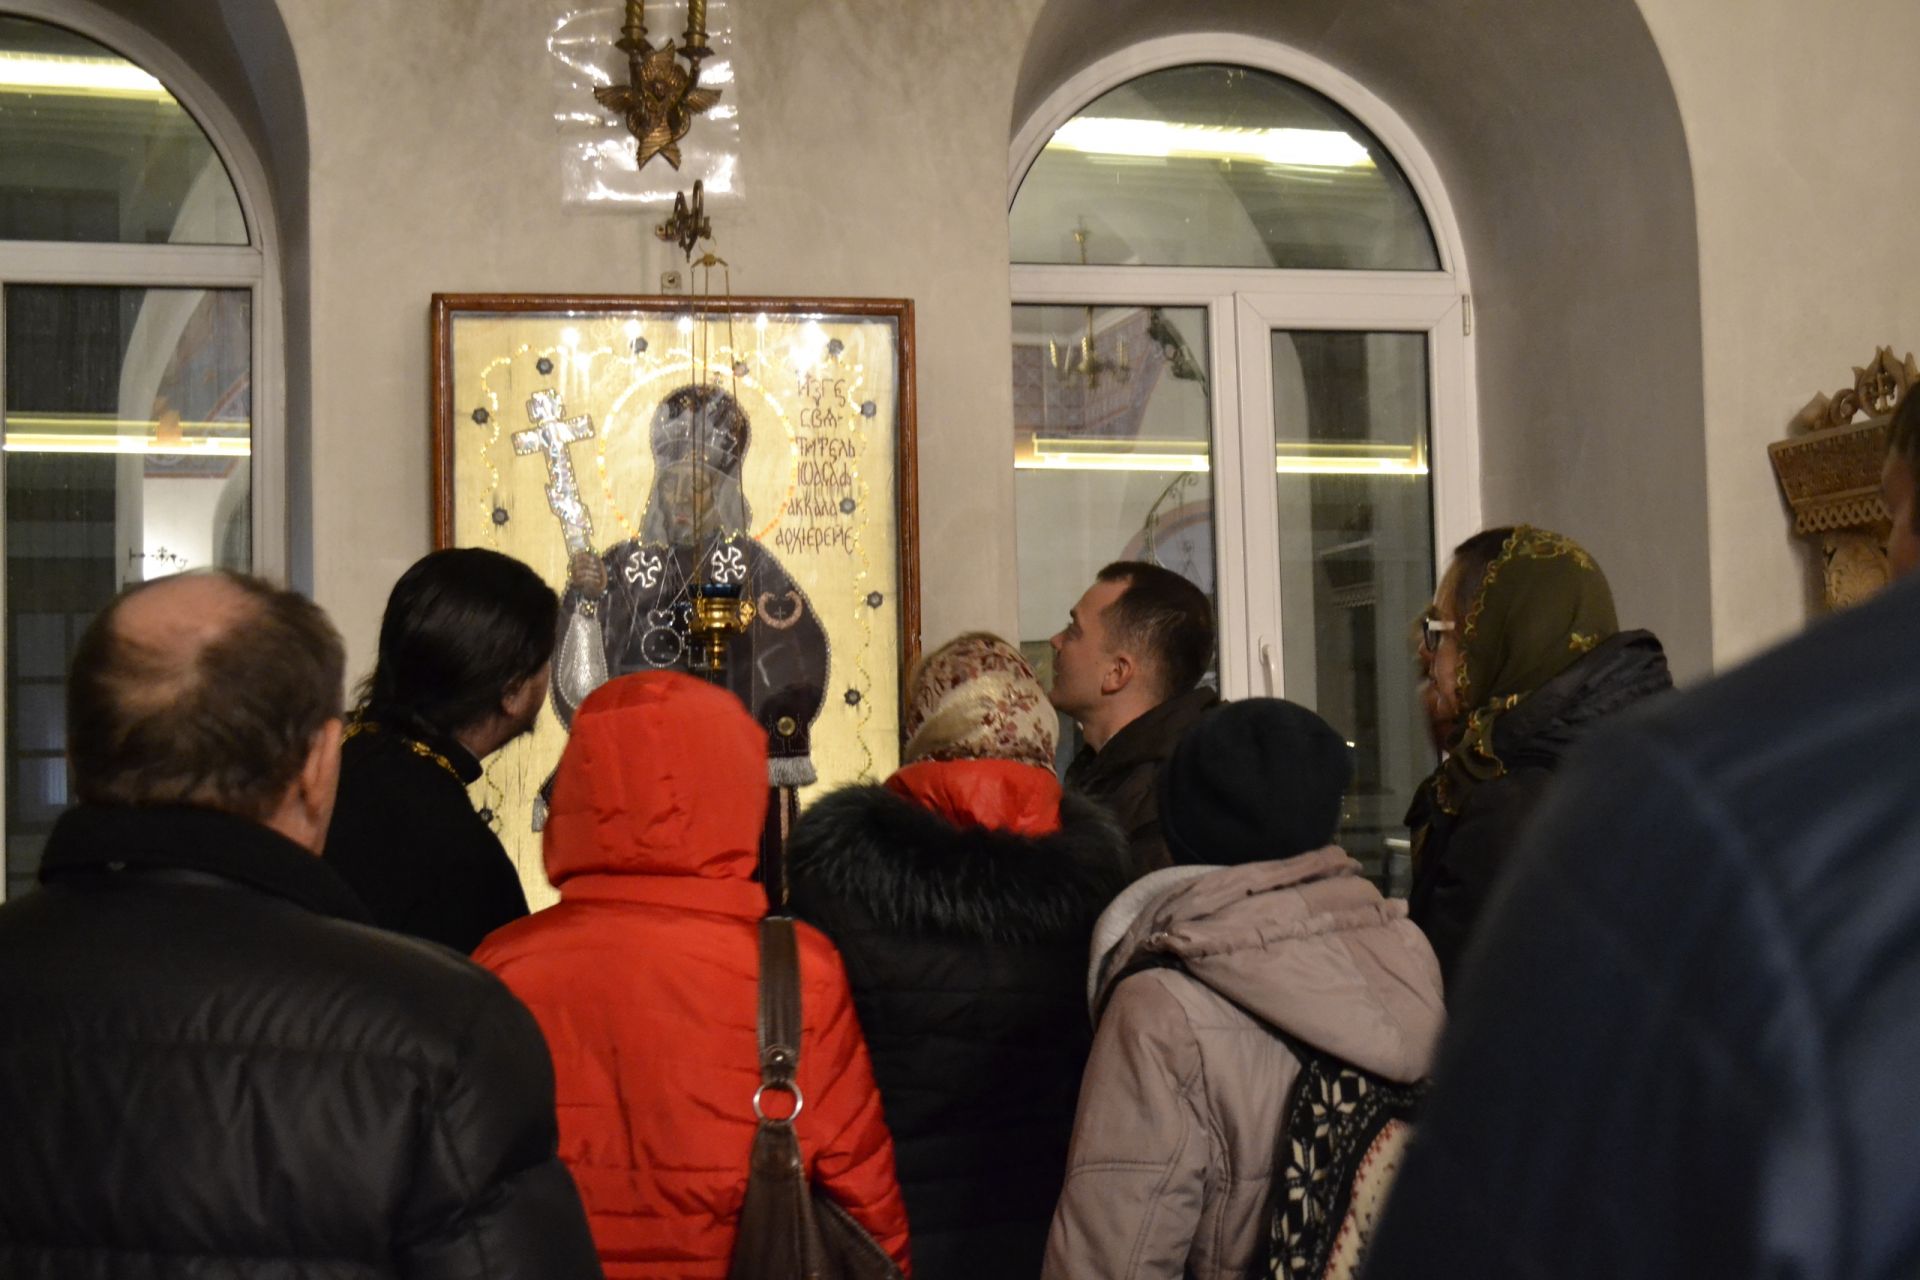 Православная молодёжь побывала в гостях у кряшен